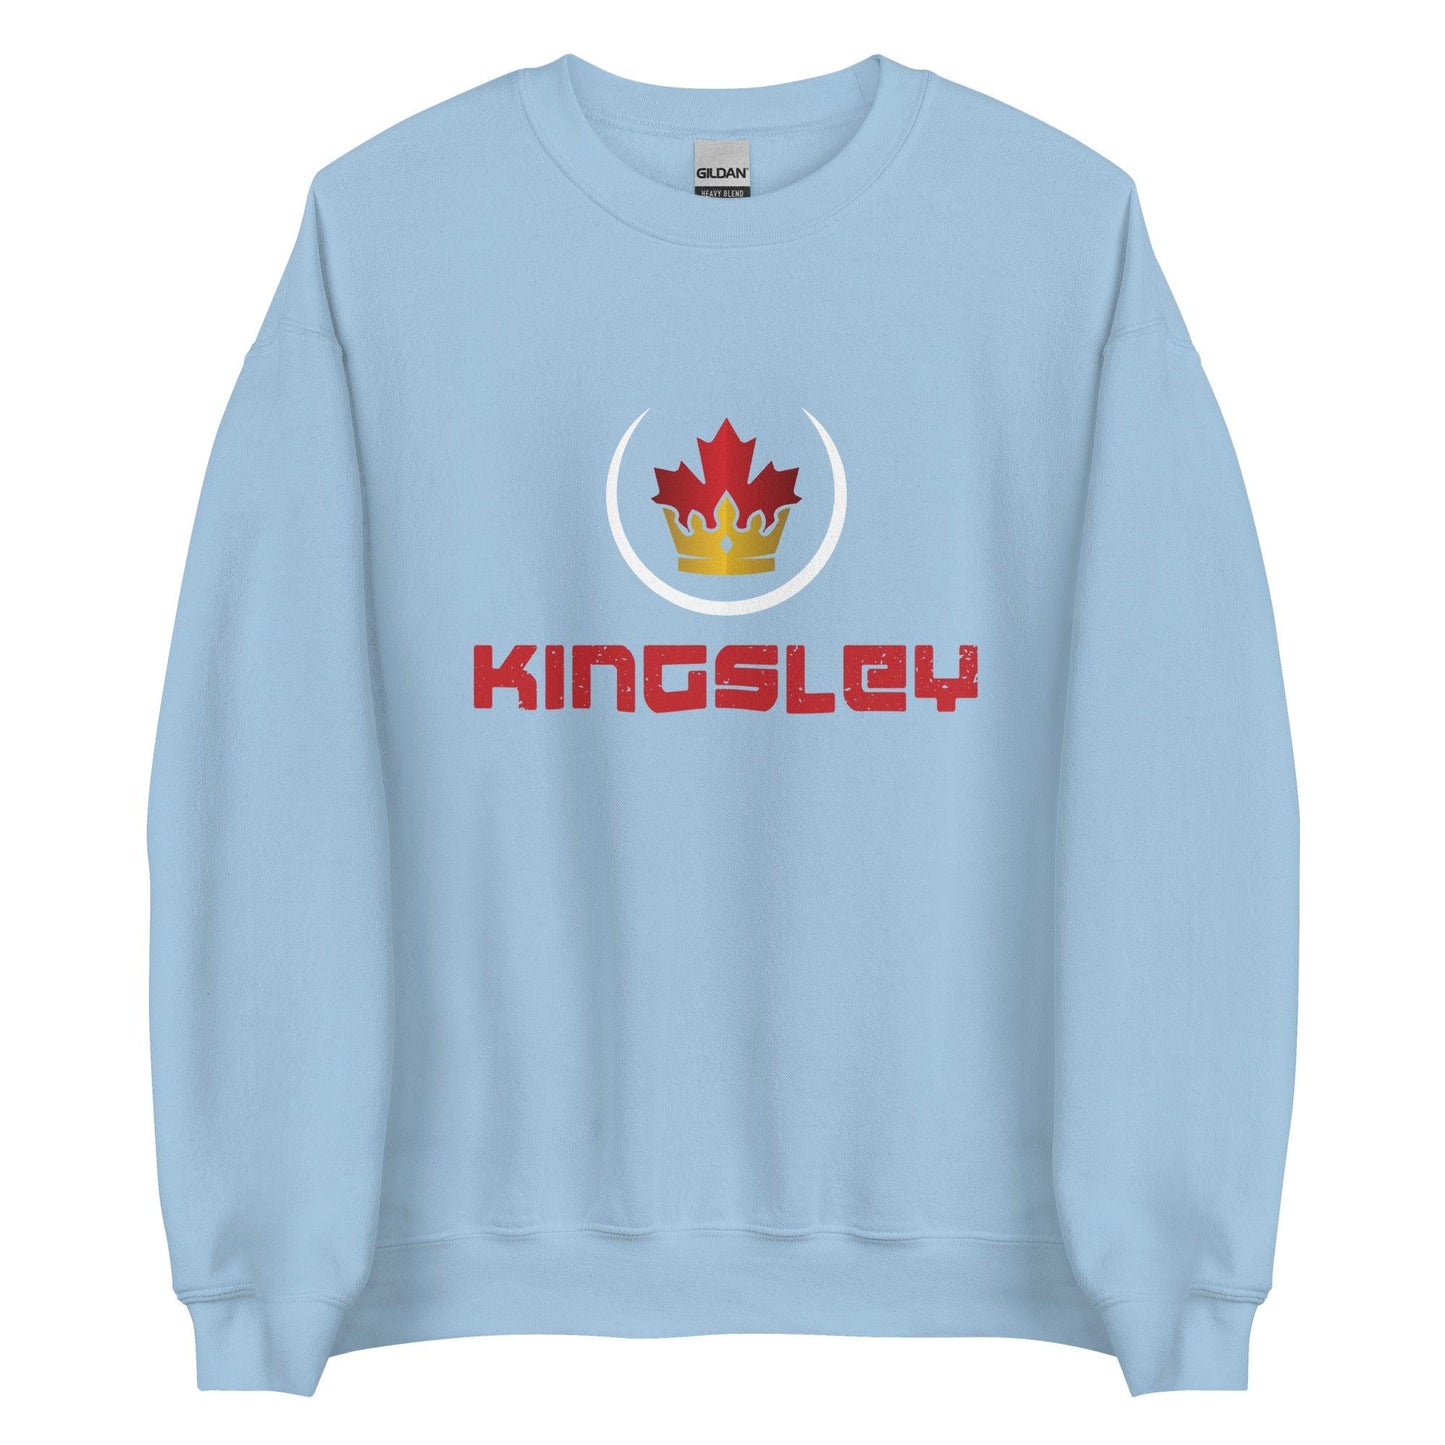 Aaron Kingsley Brown "Royalty" Sweatshirt - Fan Arch